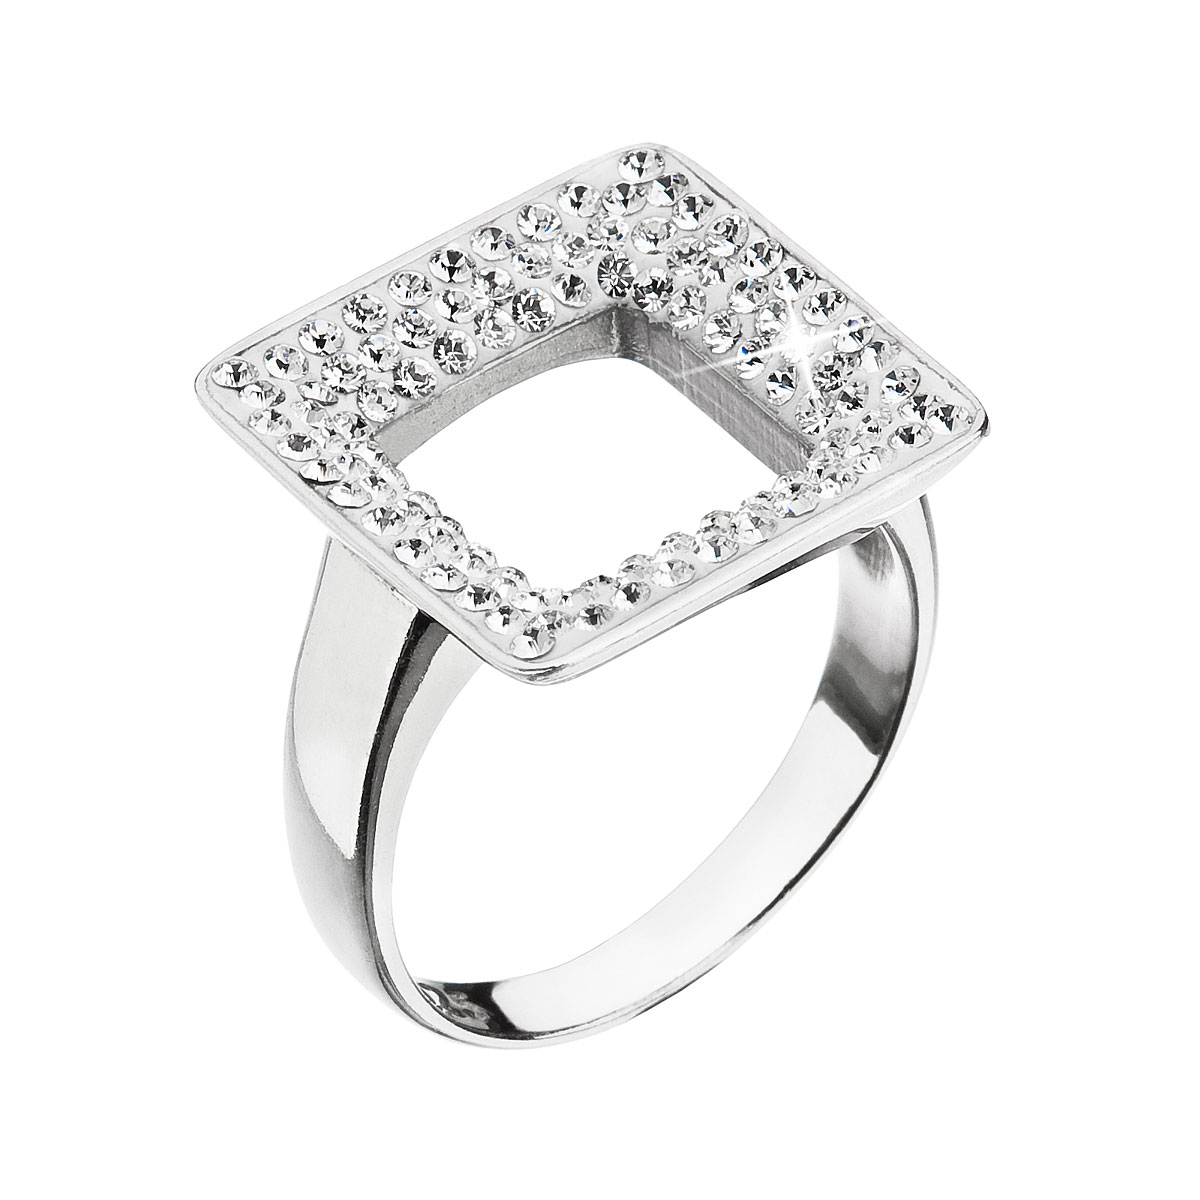 Evolution Group Stříbrný prsten s krystaly Swarovski bílý čtverec 35059.1